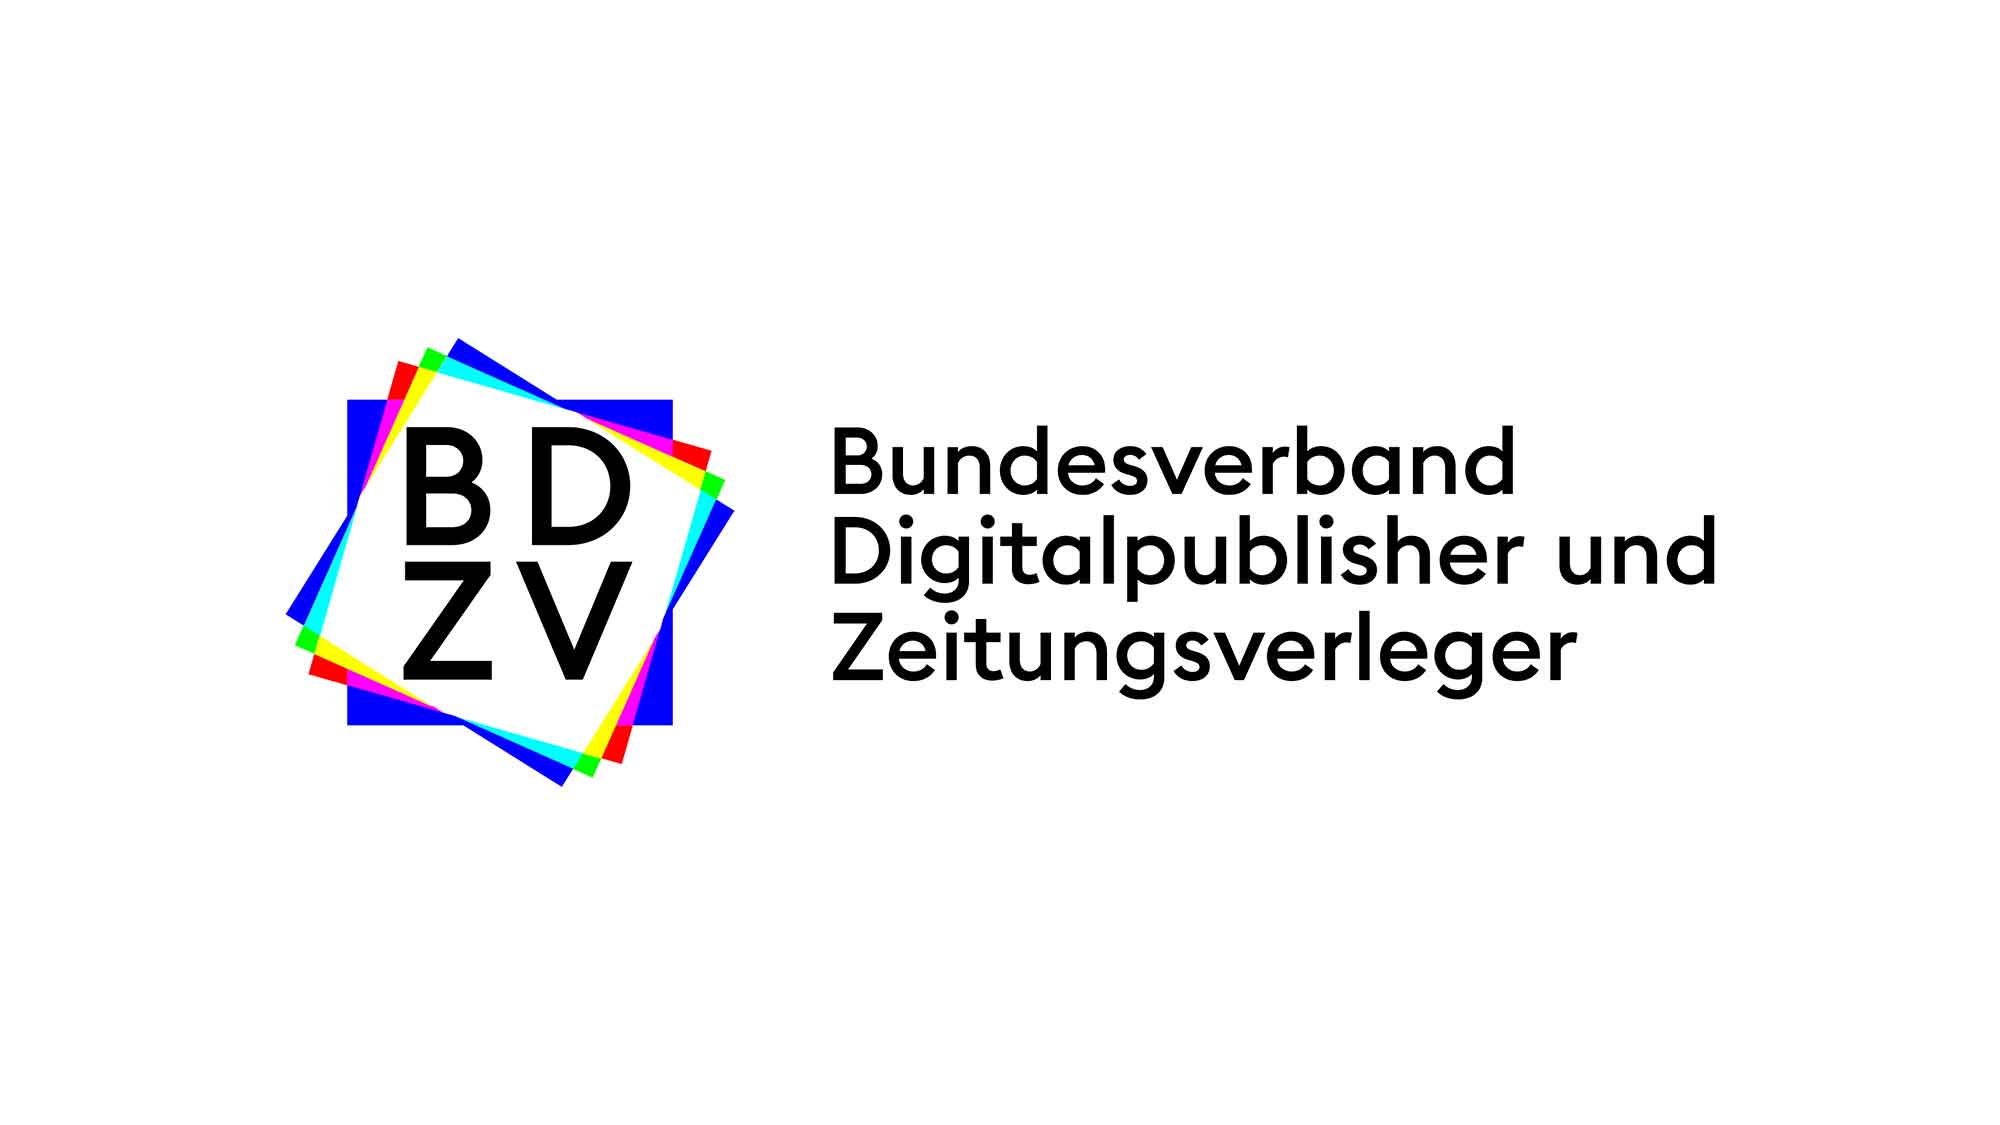 BDZV Kongress: Verleger kündigen Gespräch mit EU über Beihilfebeschwerde gegen Öffentlich Rechtlichen Rundfunk an